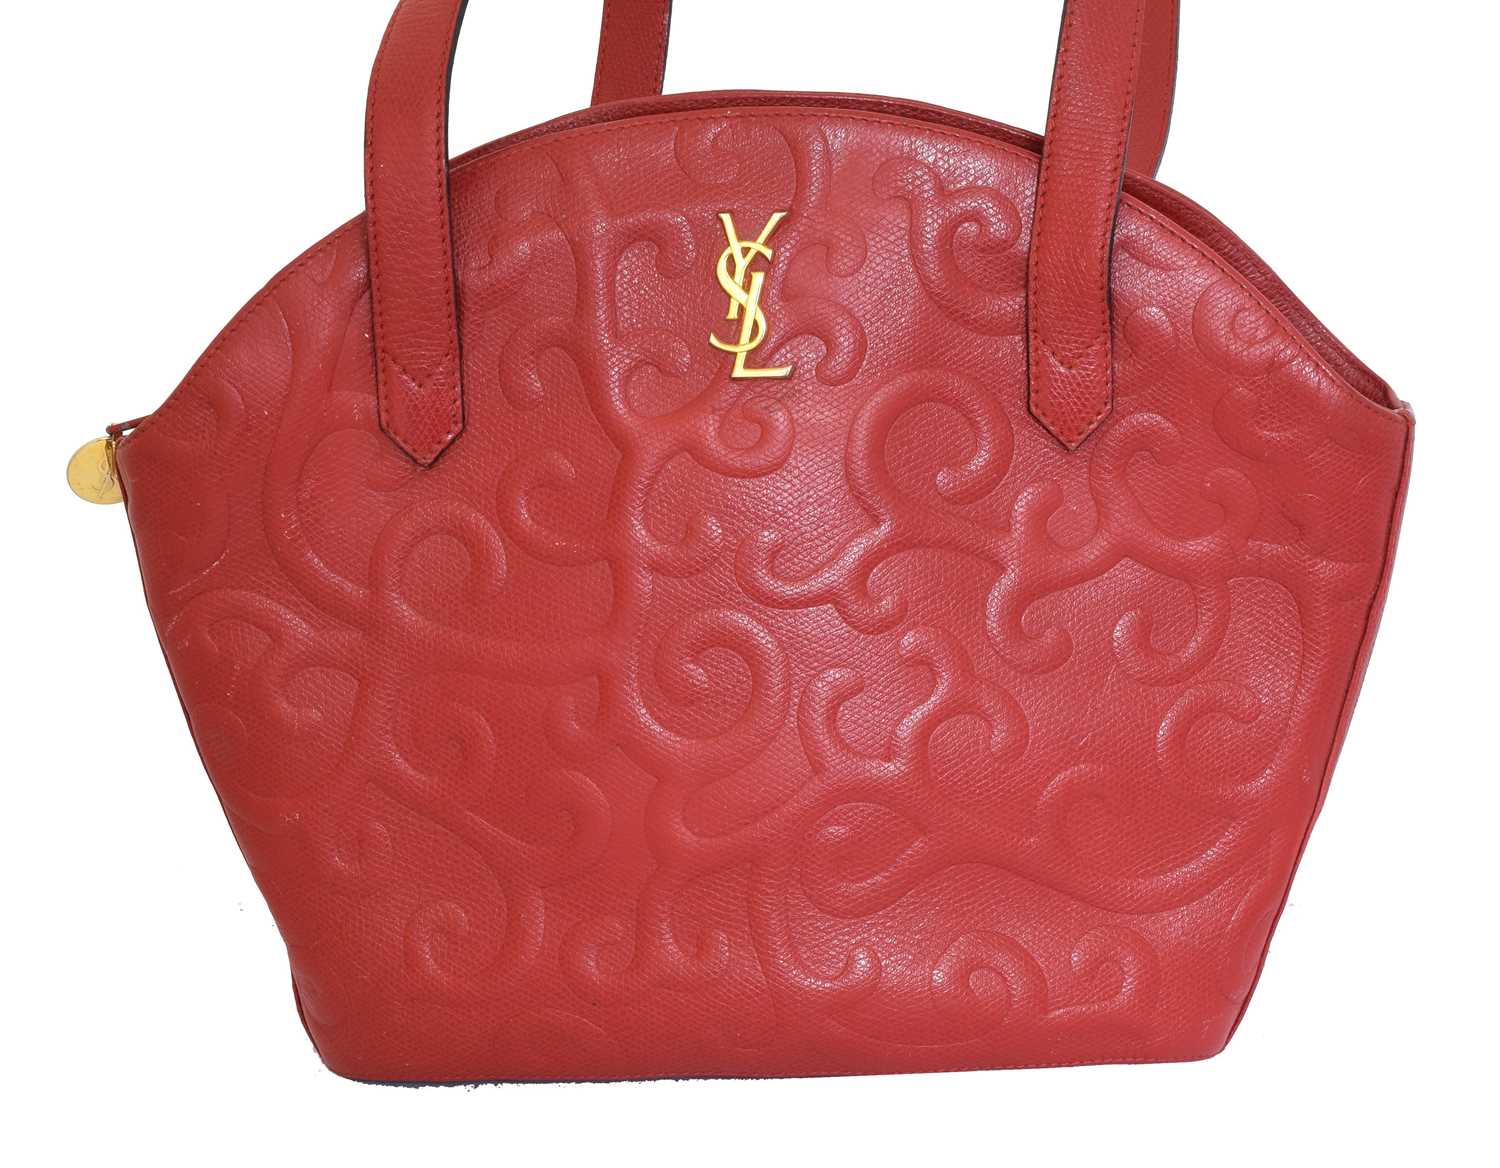 A Yves Saint Laurent shoulder bag,